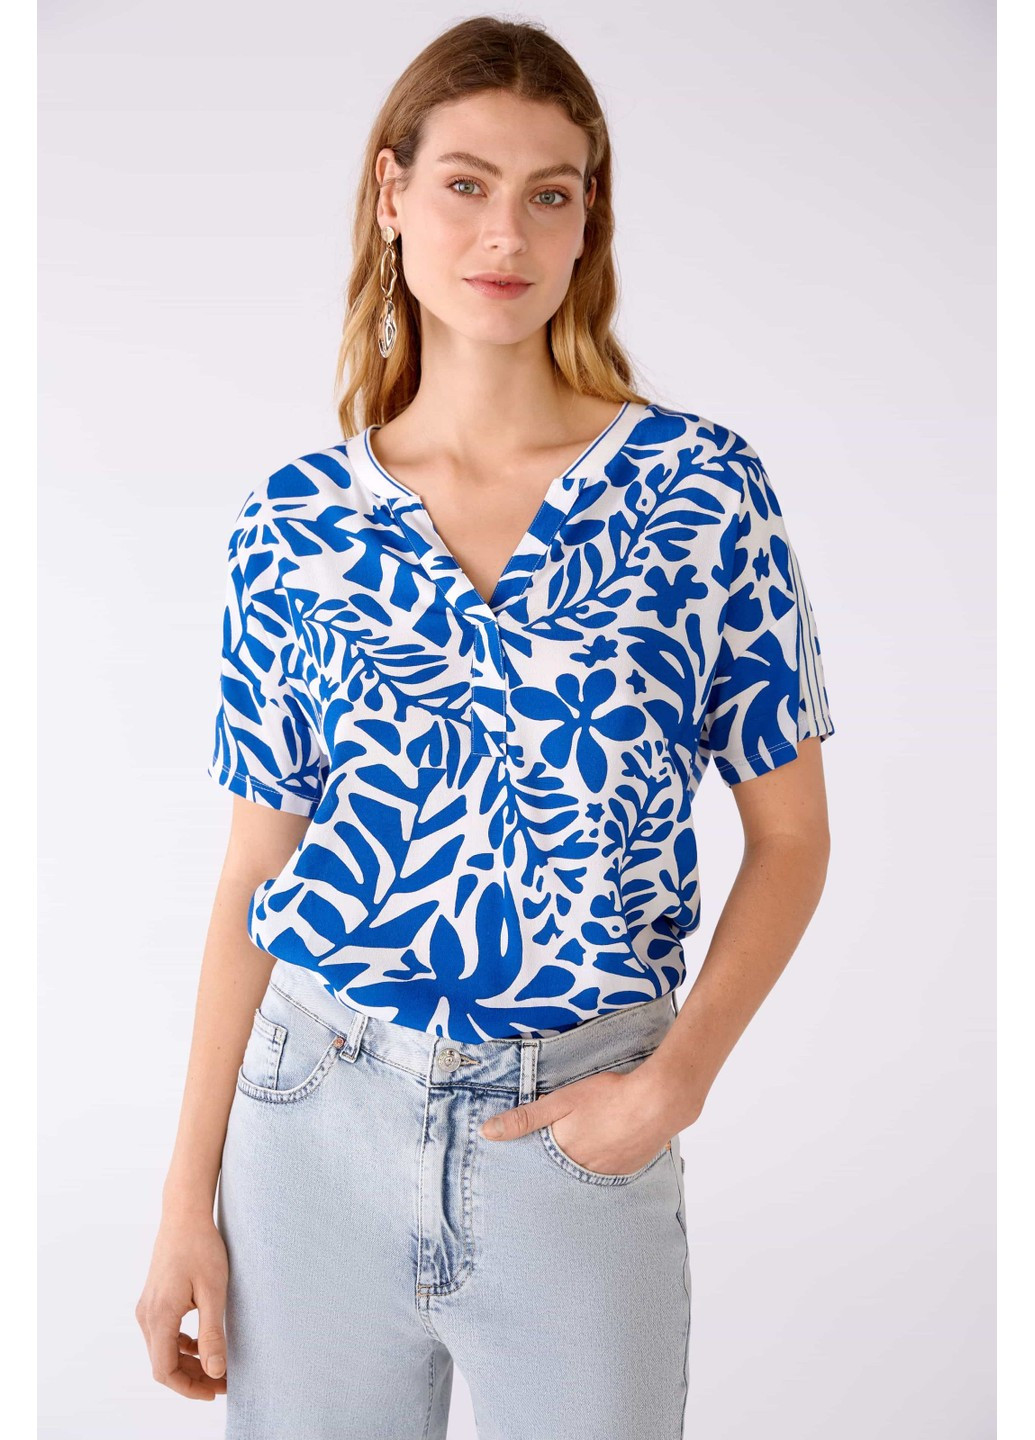 Комбинированная женская блузка разные цвета Oui